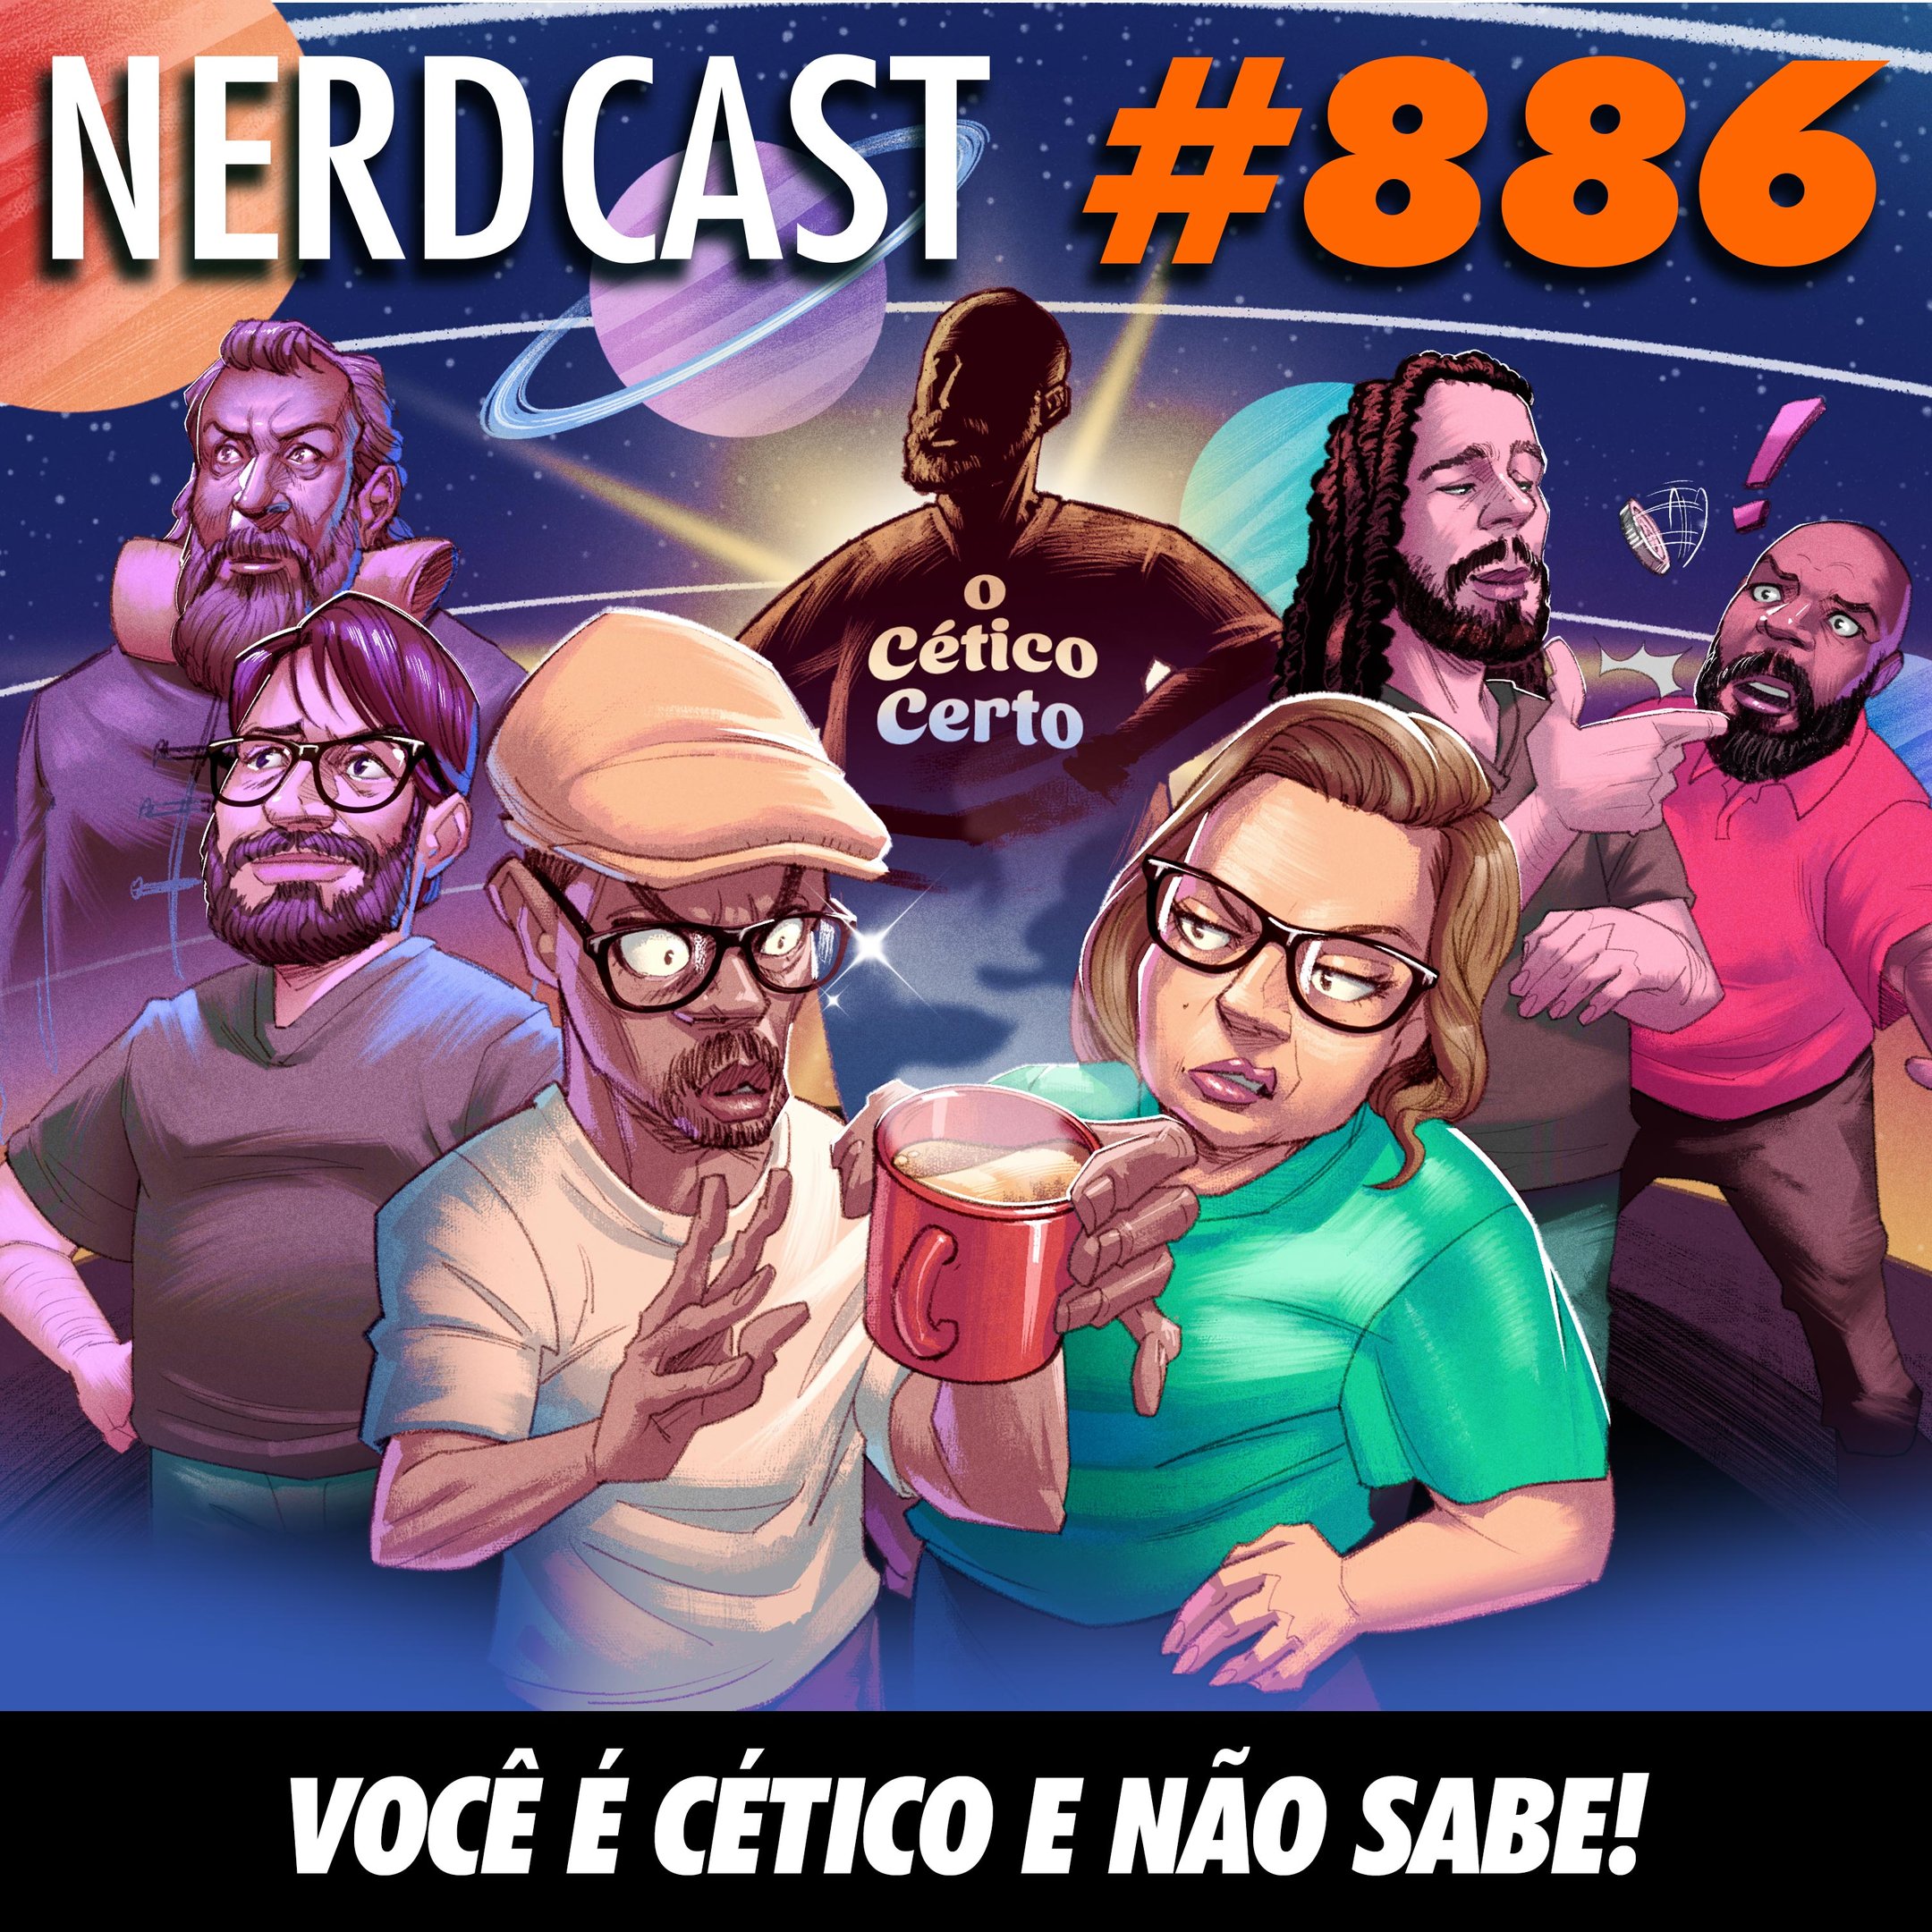 Lá do Bunker 101 - Micareta Gamer – NerdCast – Podcast – Podtail